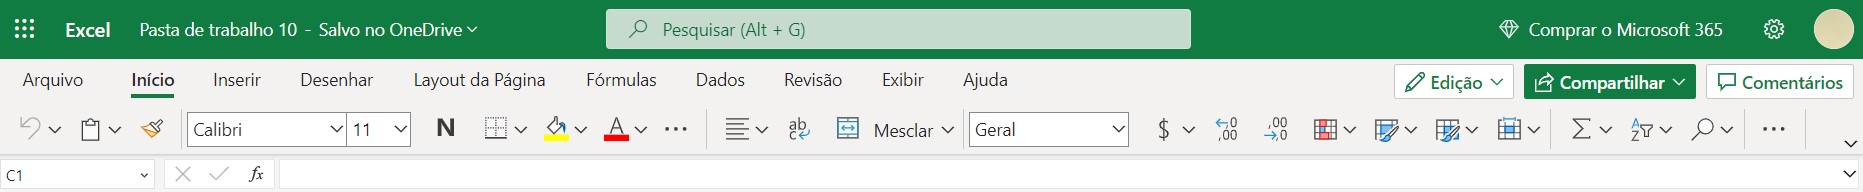 Ferramentas do Excel Web